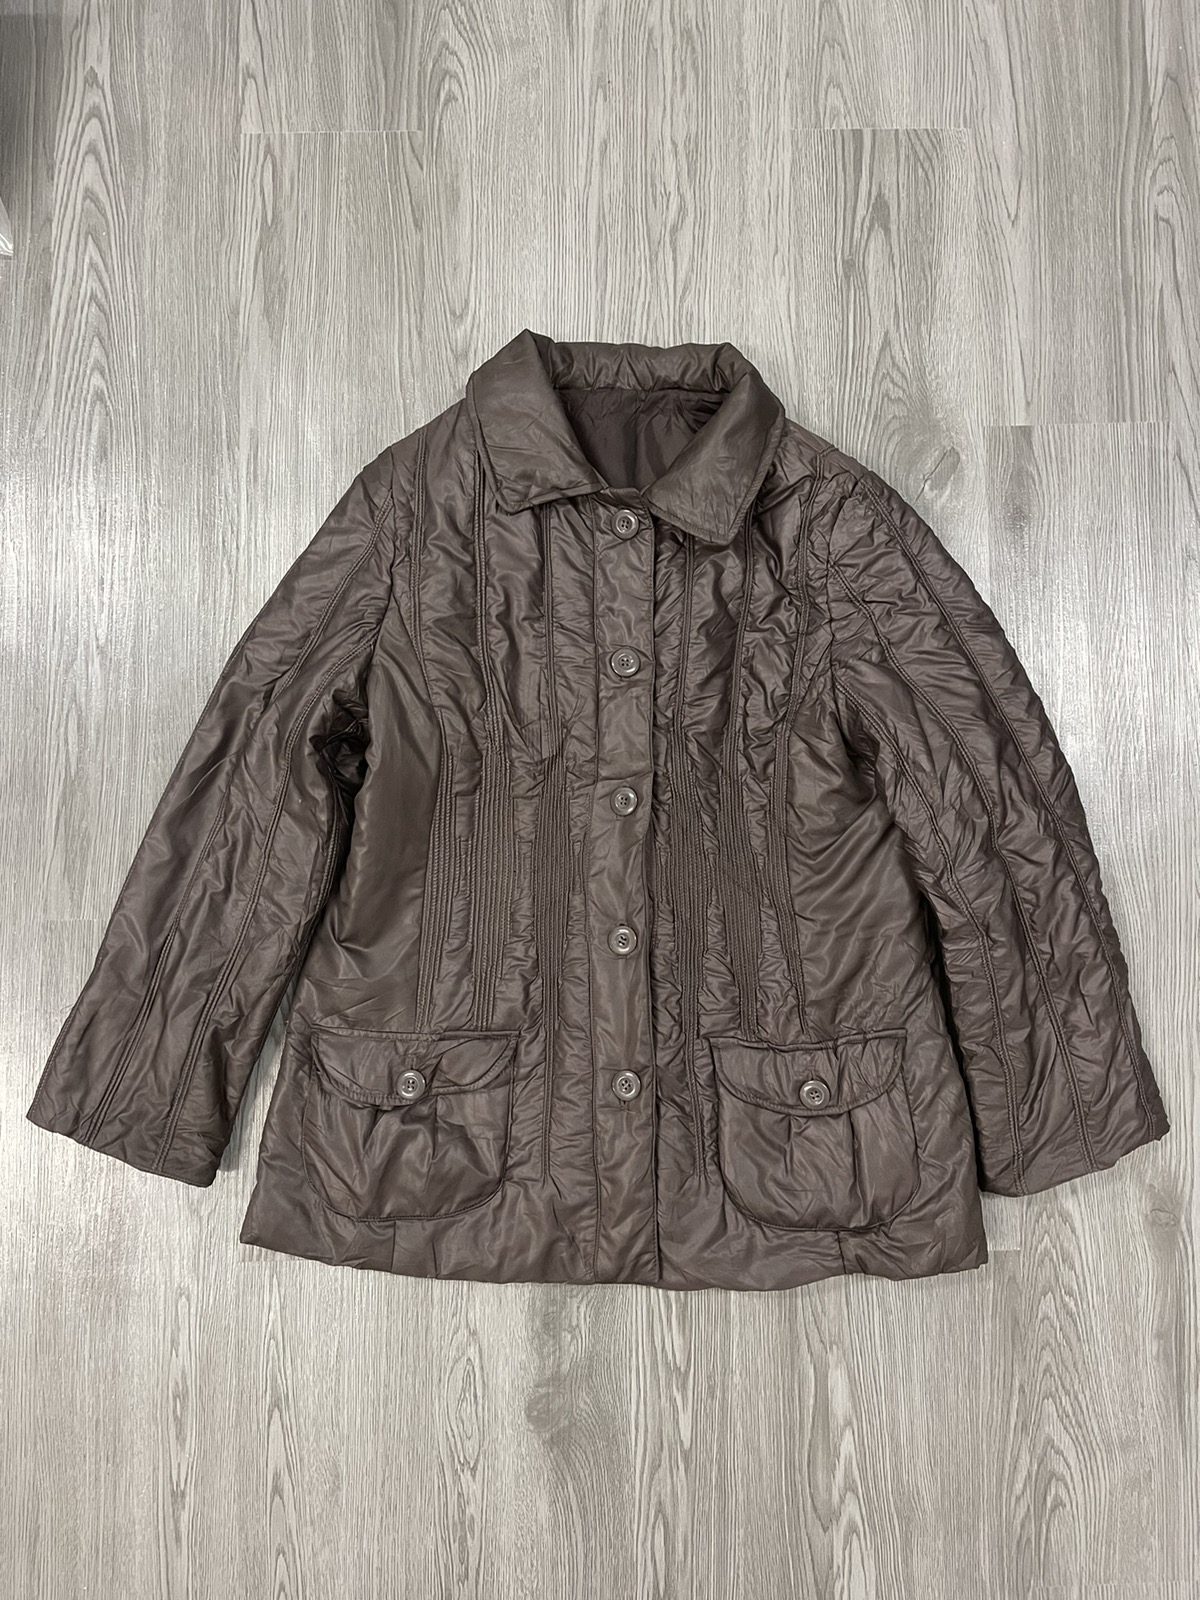 Awesome🔥Longchamp puffy jacket - 3